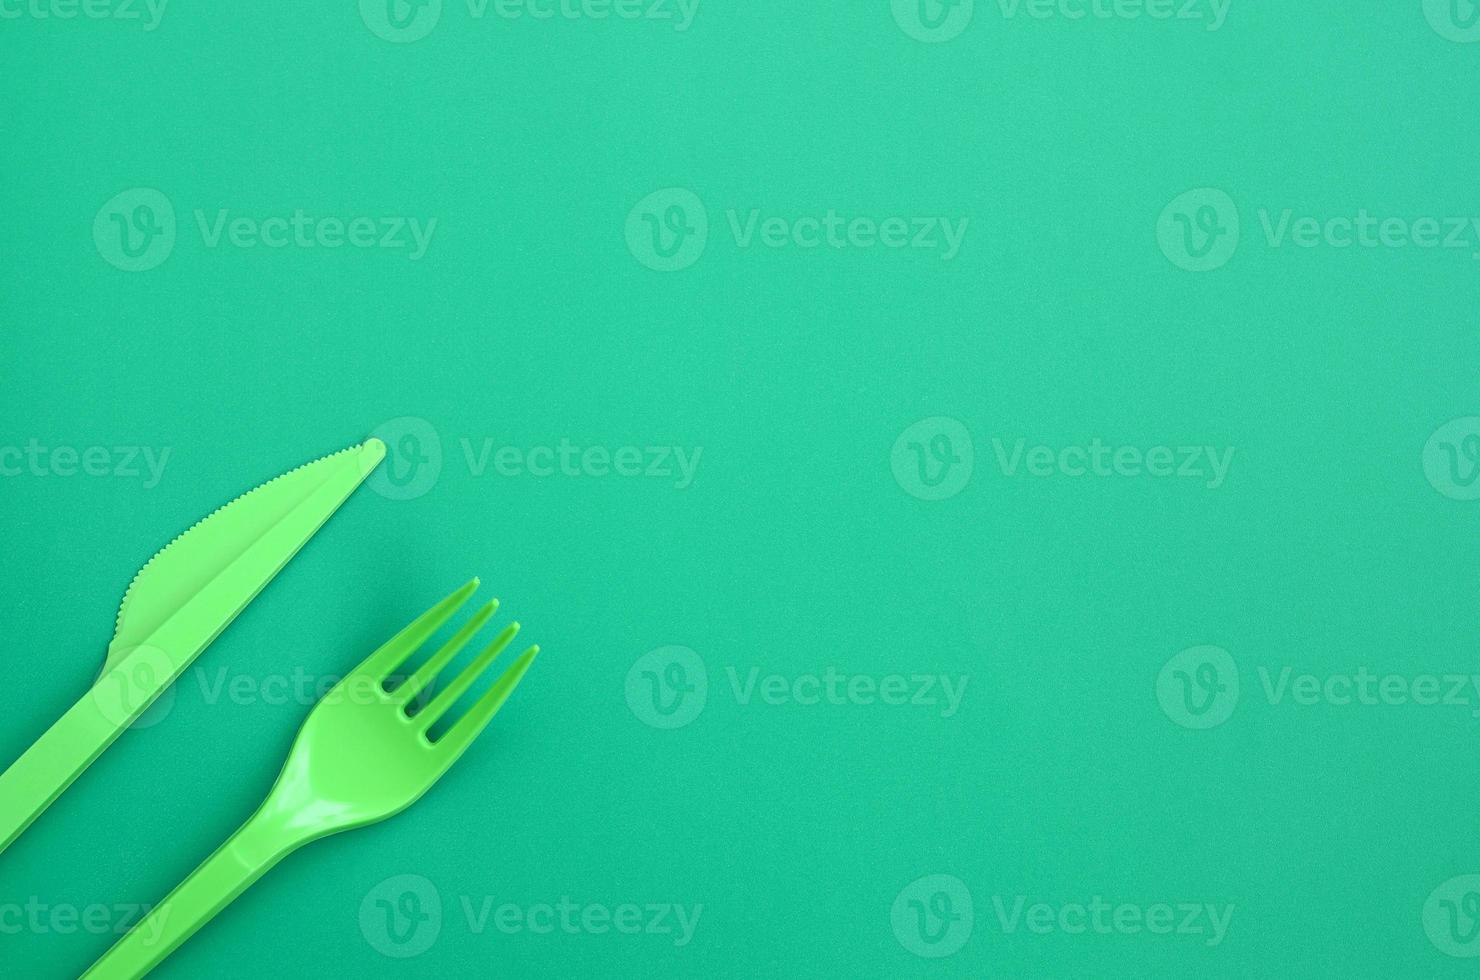 disponibel plast bestick grön. plast gaffel och kniv lögn på en grön bakgrund yta foto